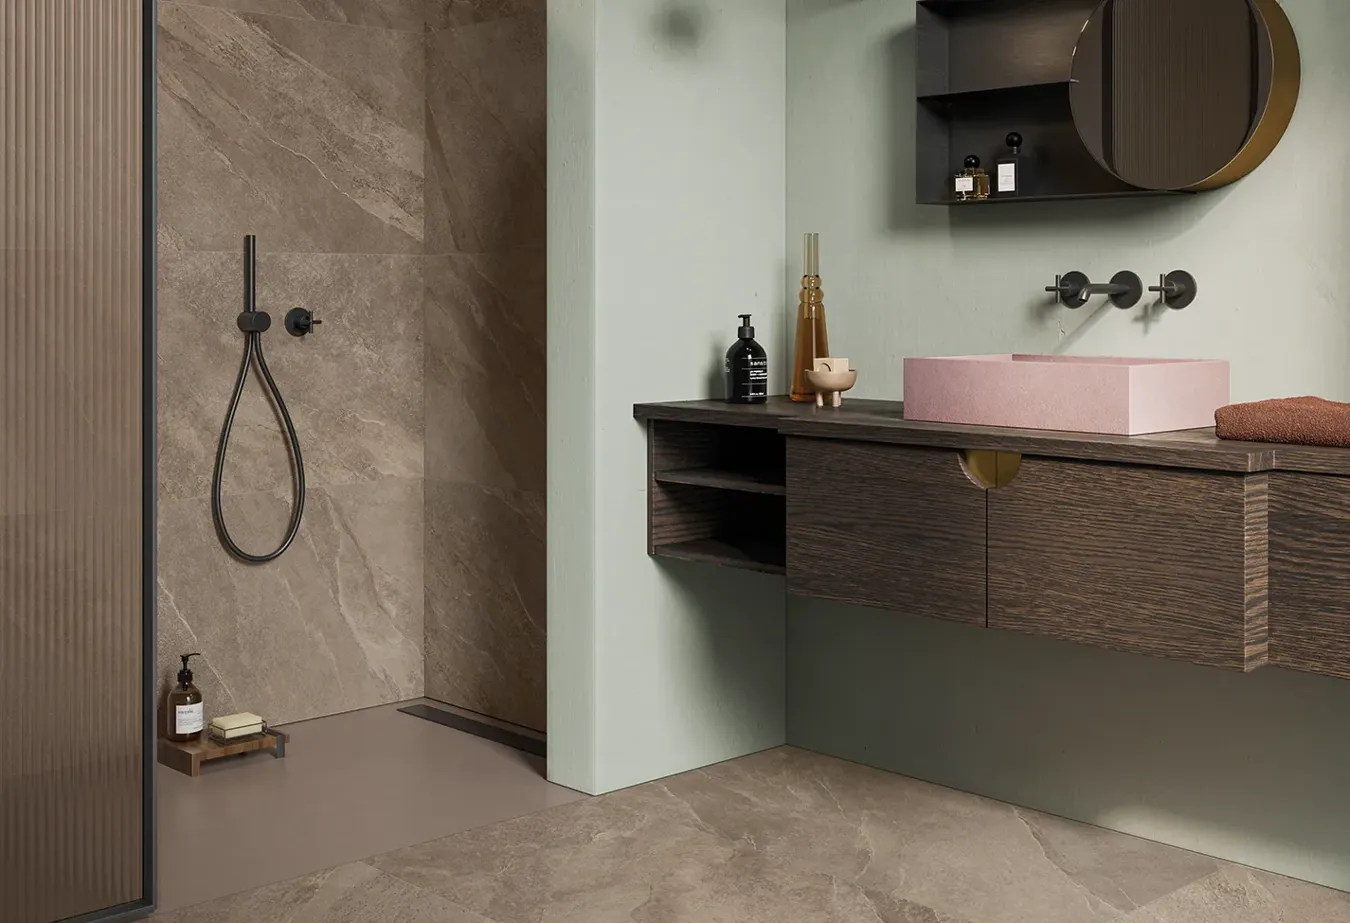 Шикарная ванная комната с настенной и напольной плиткой Ubik Walnut под сланец, темной деревянной мебелью и розовой раковиной.